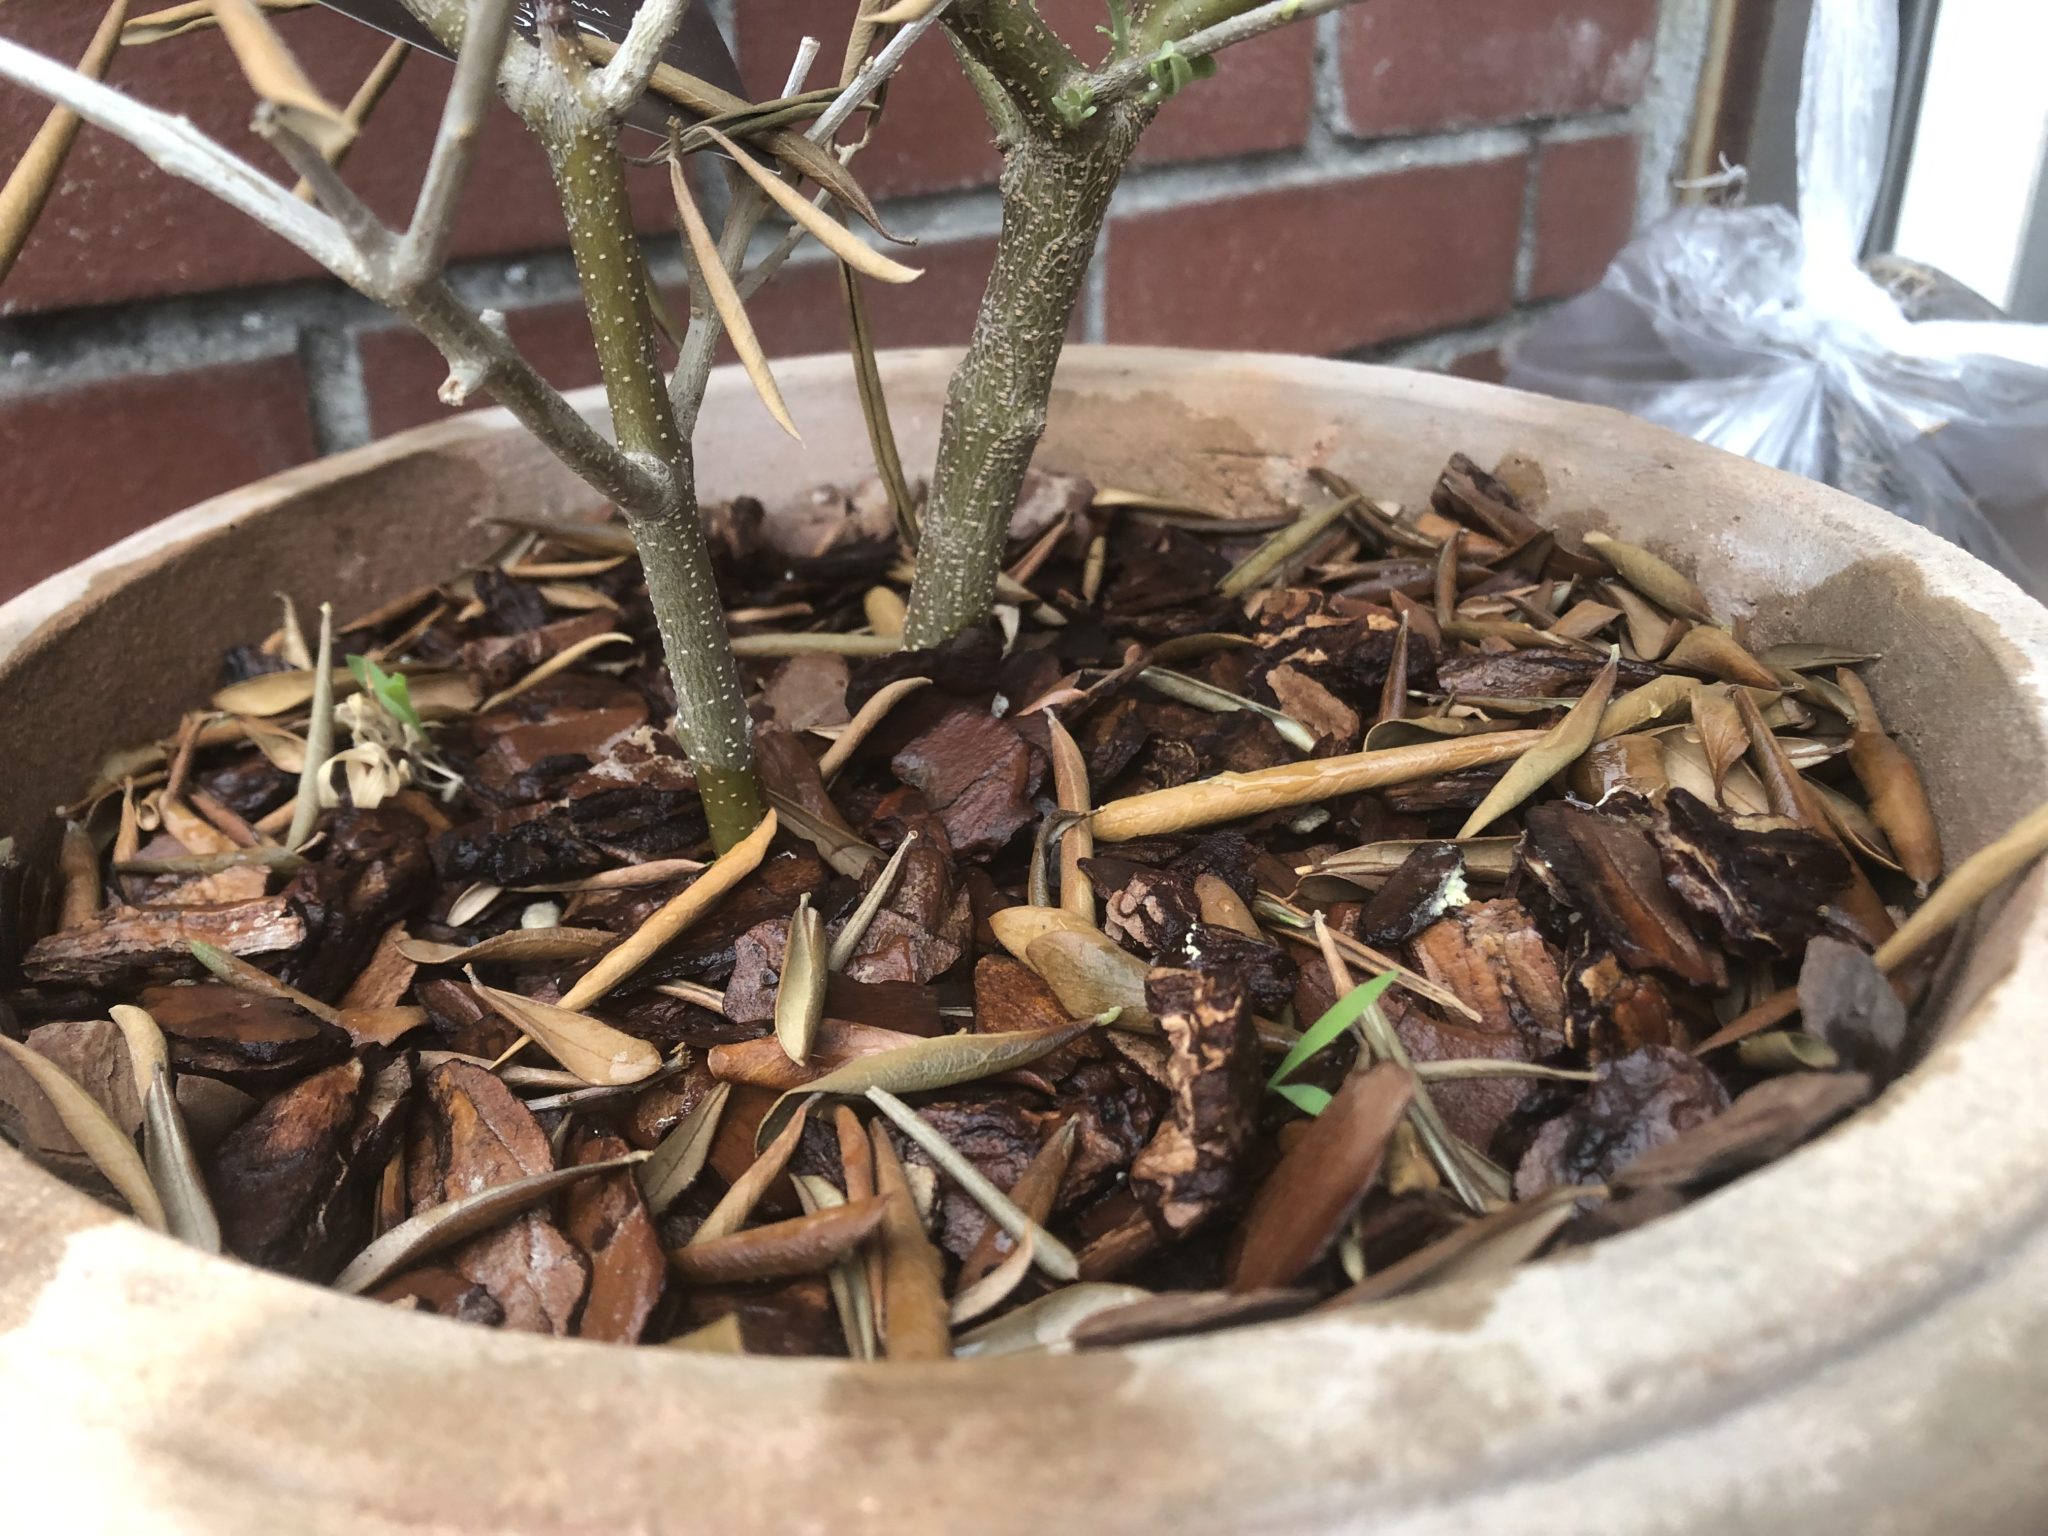 オリーブの枯れた茶色い葉っぱを復活させる方法 家庭菜園 耕作放棄地開墾ブログ ゆる子の農業生活